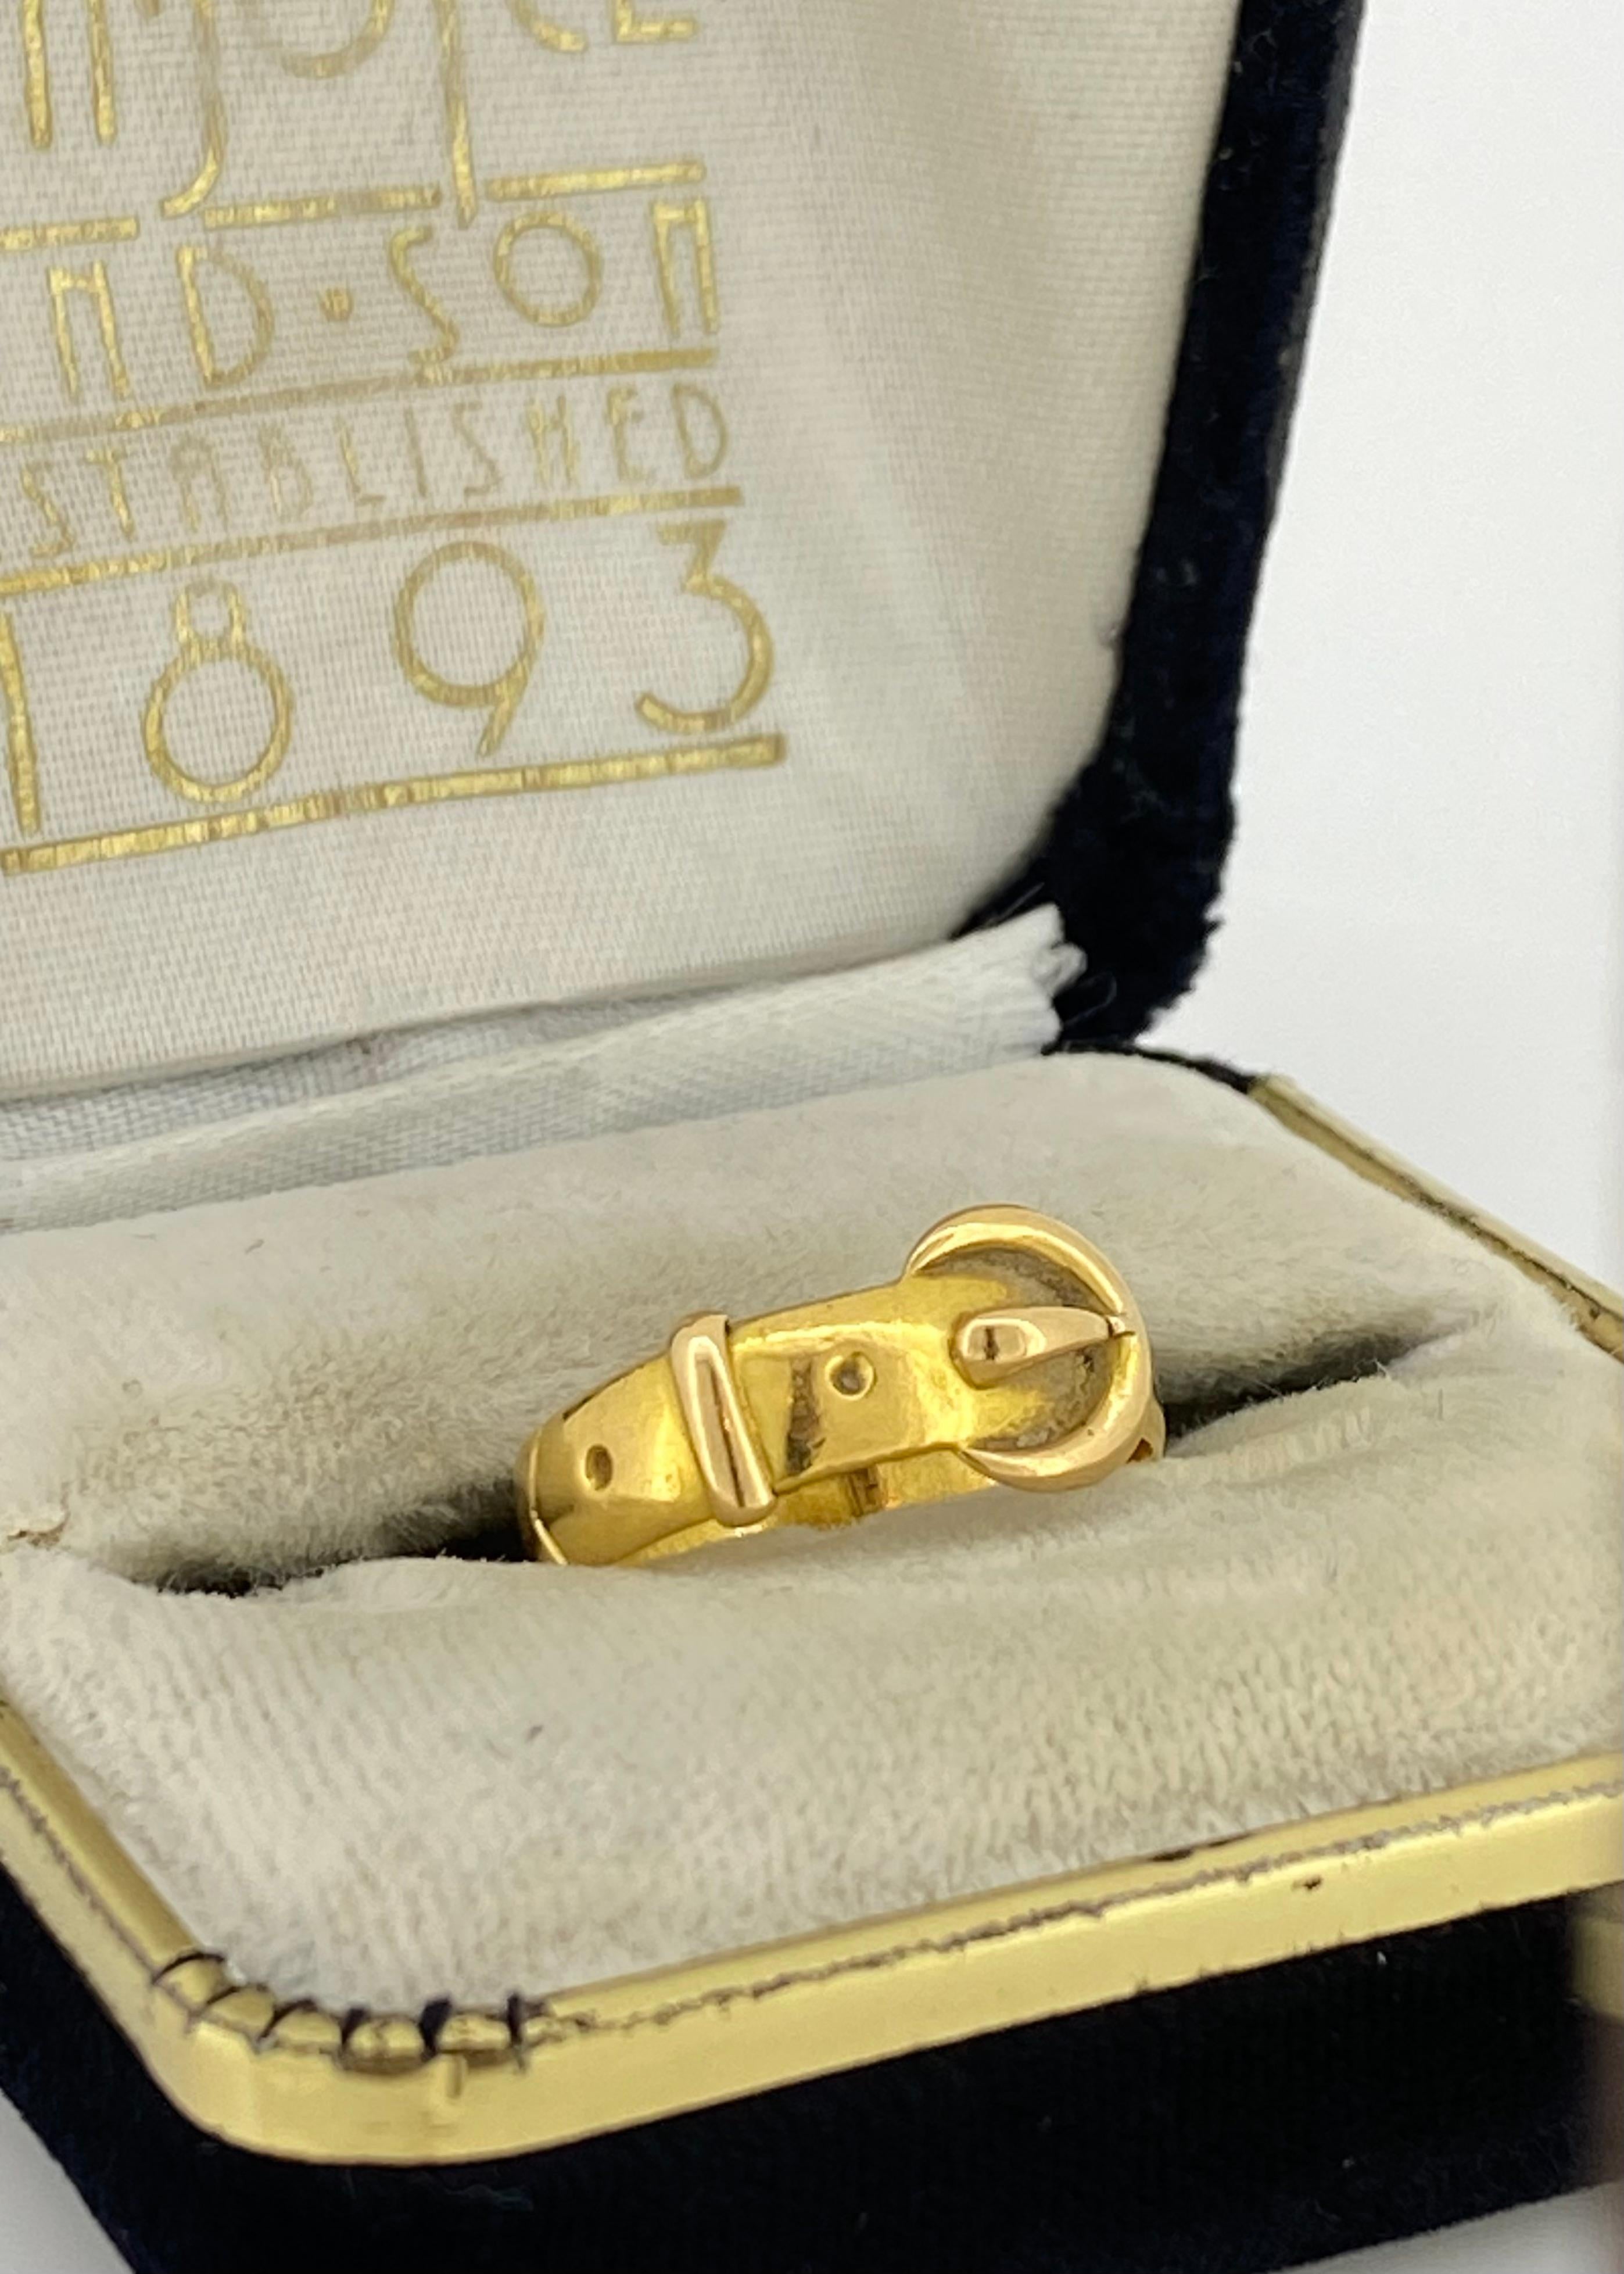 Gefertigt aus 22 Karat Gelbgold, 
der Ring hat die Form eines verschlungenen Gürtels / einer Schnalle 
(durchweg unglaublich detailliert), 
mit einer Bandbreite von 10 mm

Das Stück stammt aus der spätviktorianischen Zeit, 
und doch ist es in